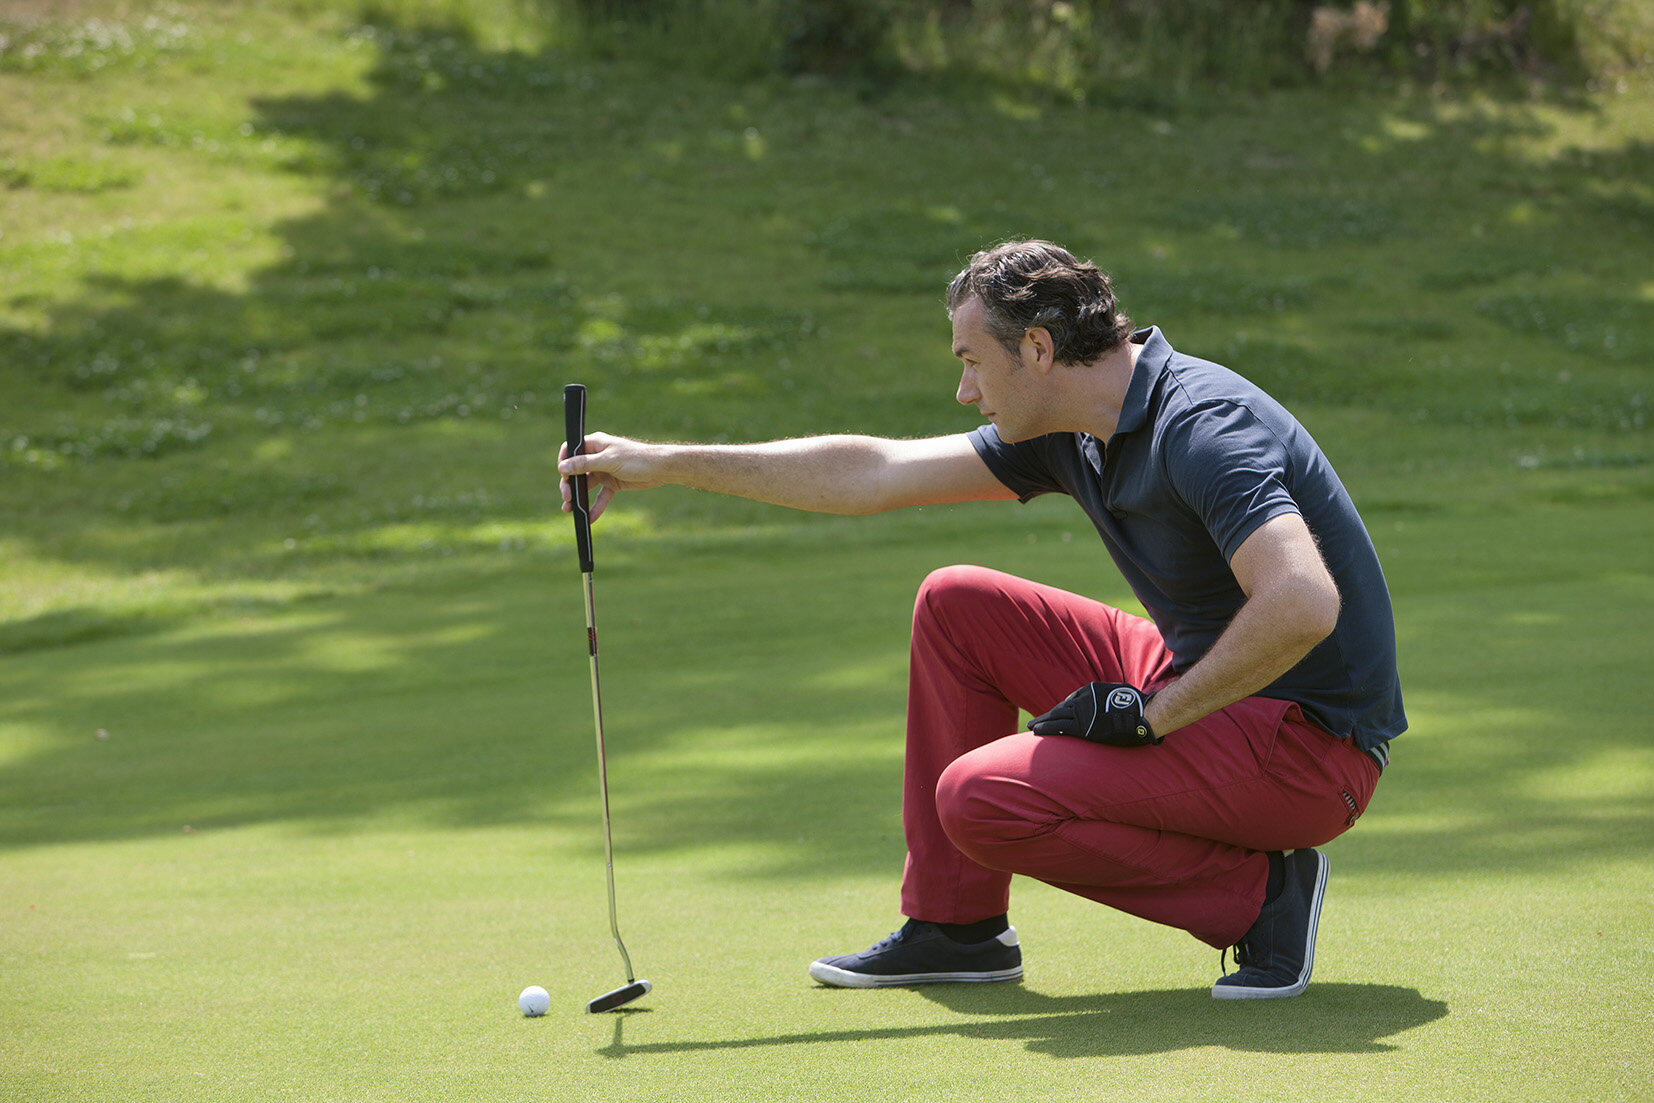 Ein Golfer in roter Golf Hose kniet auf dem Platz und analysiert genau seinen nächsten Abschlag